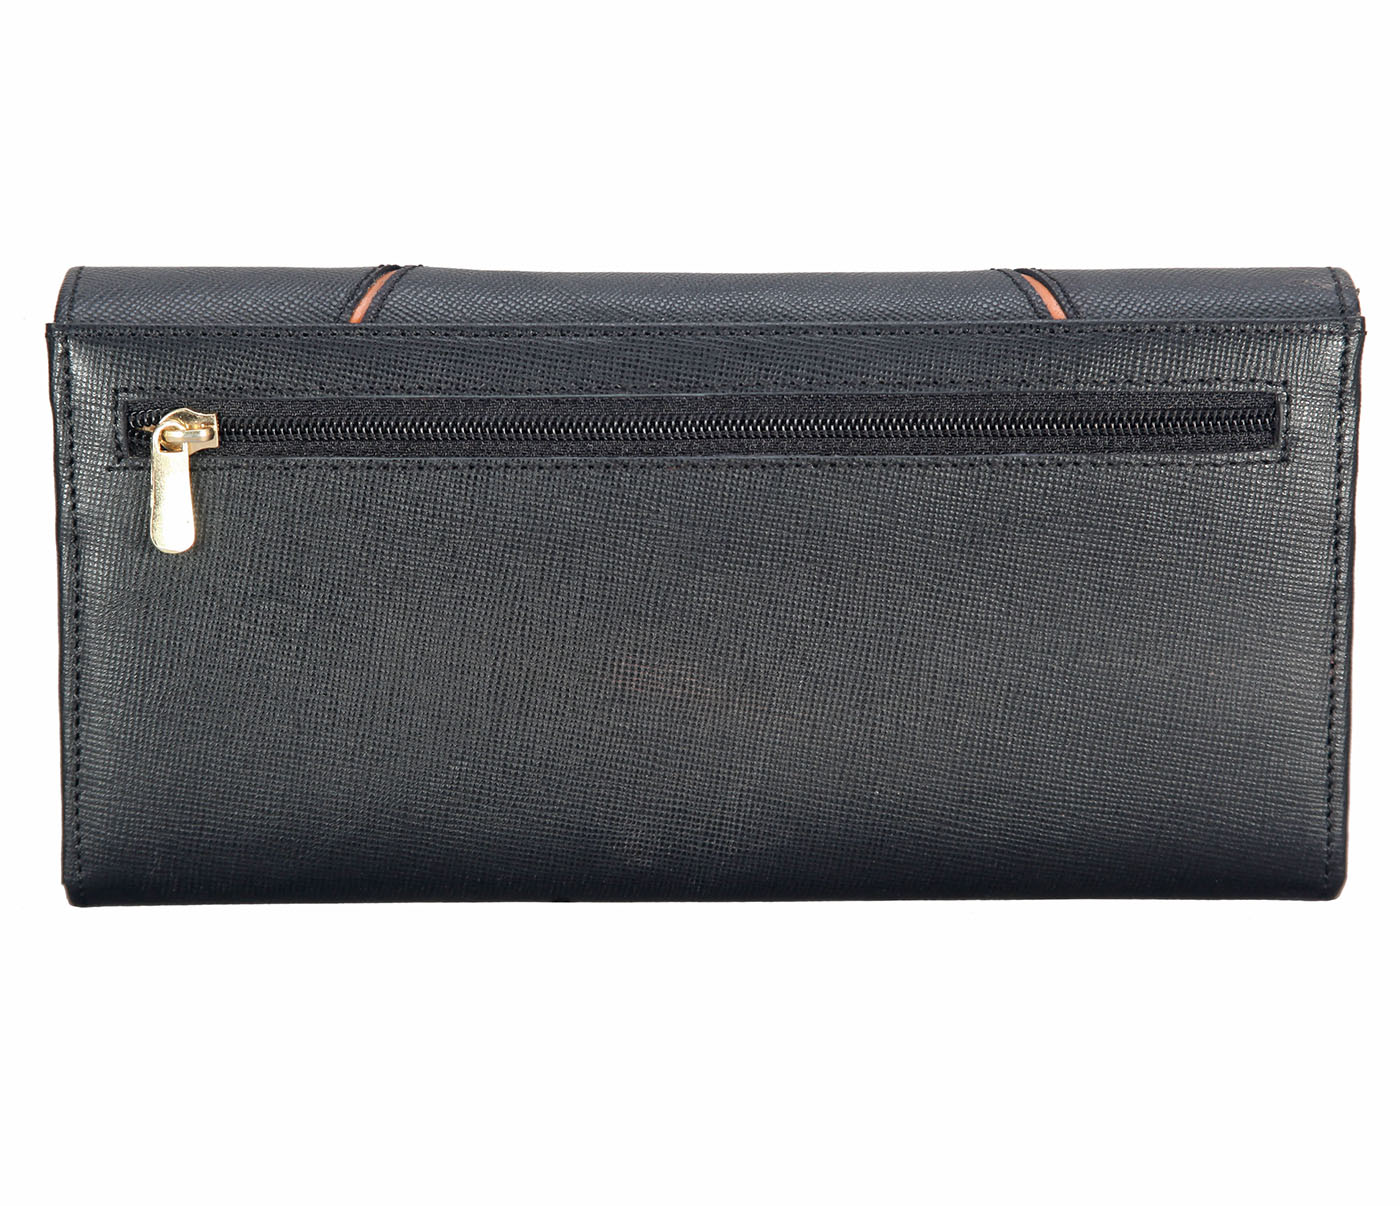 W309-Imala-Women's wallet cum clutch in Genuine Leather - Black